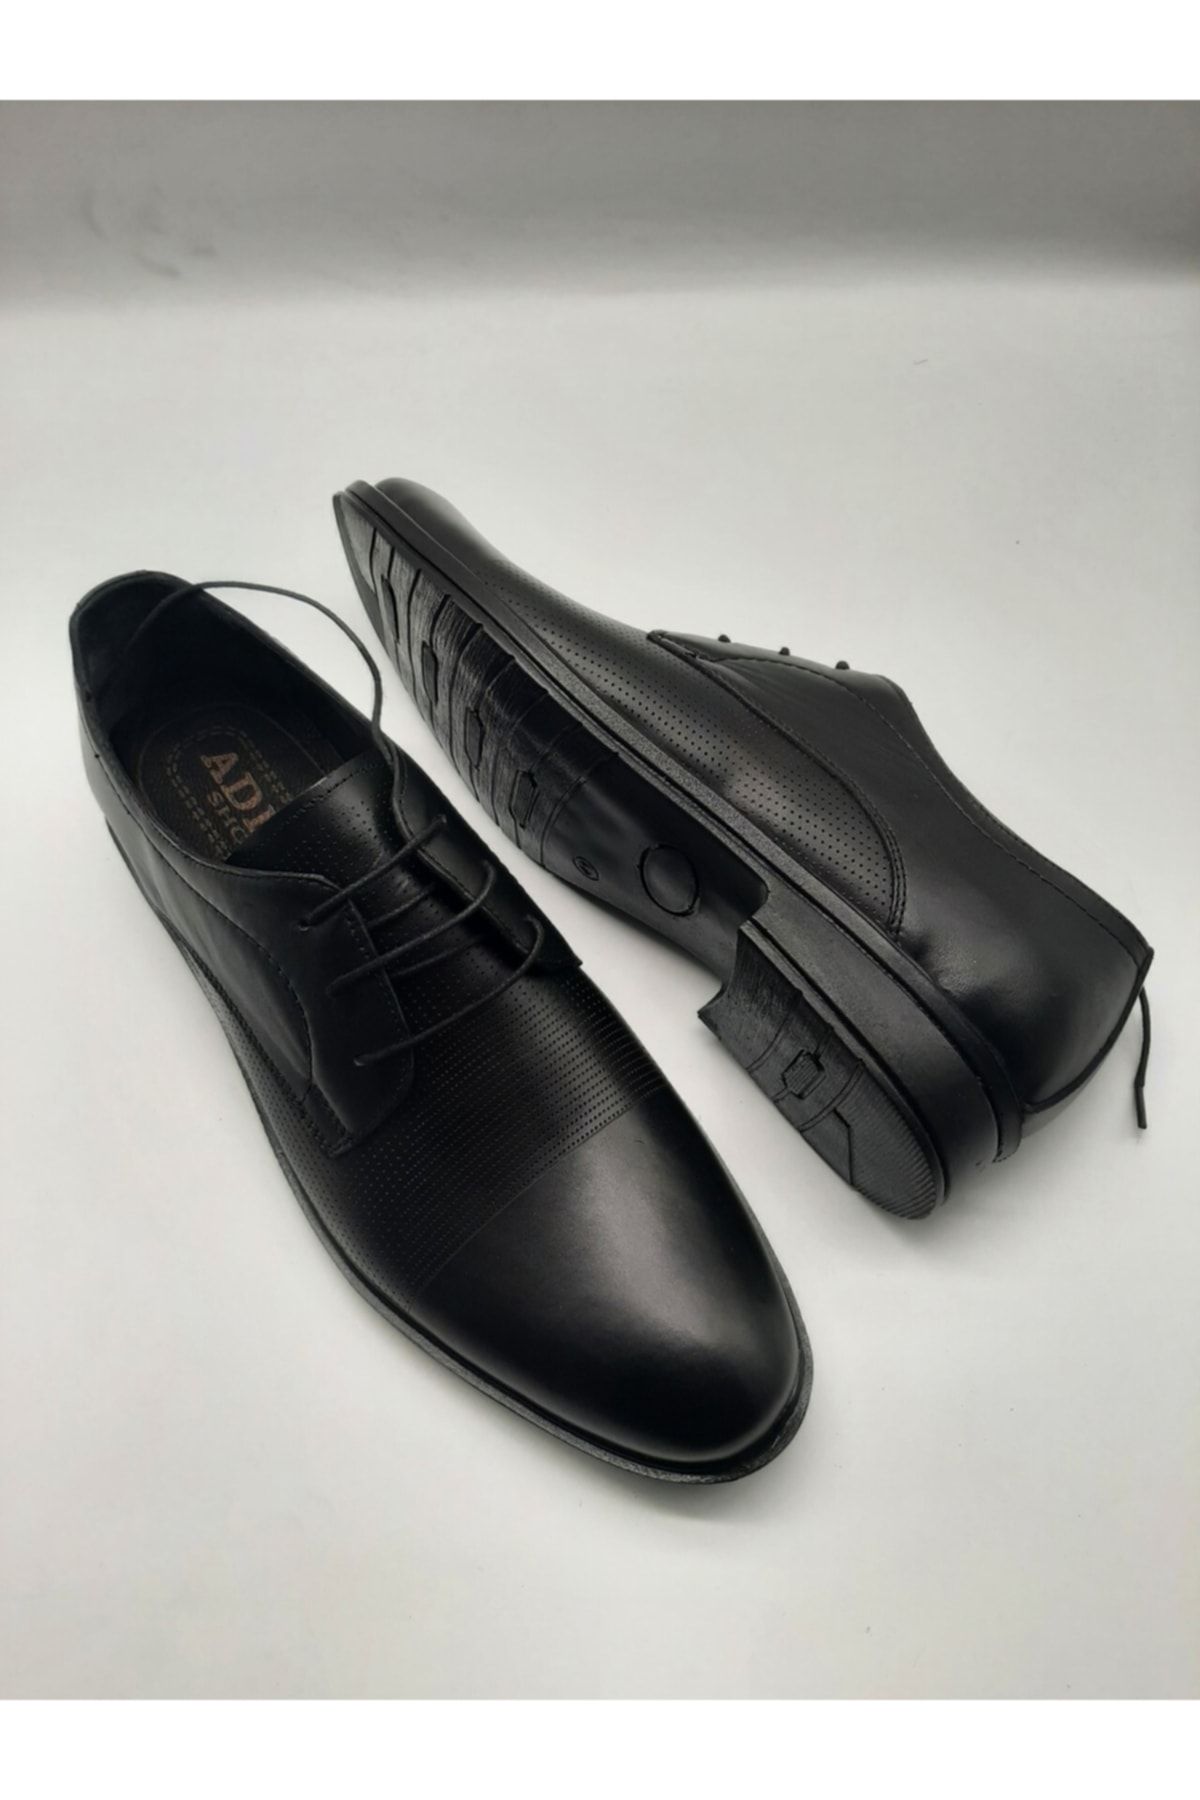 Adel Deri Yeni Model Klasik Ayakkabımız